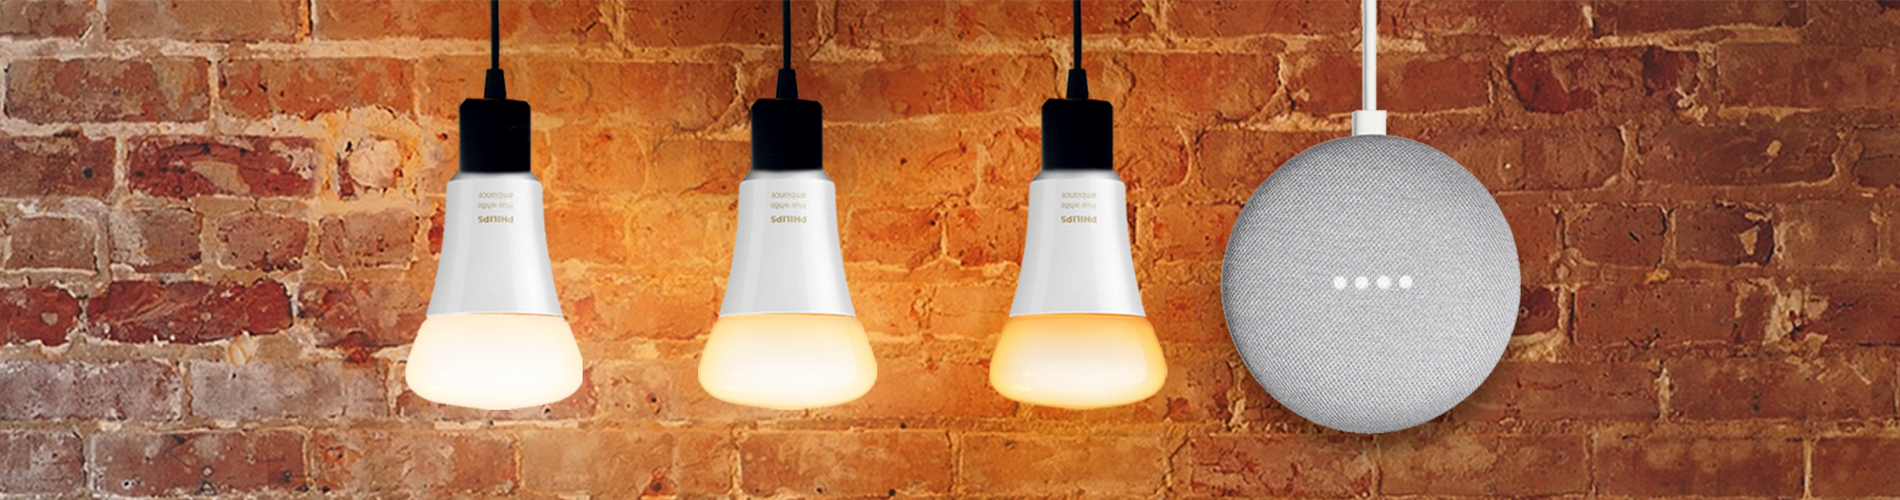 3 Phillips Hue Glühbirnen und grauer Google Home Mini vor Backsteinwand